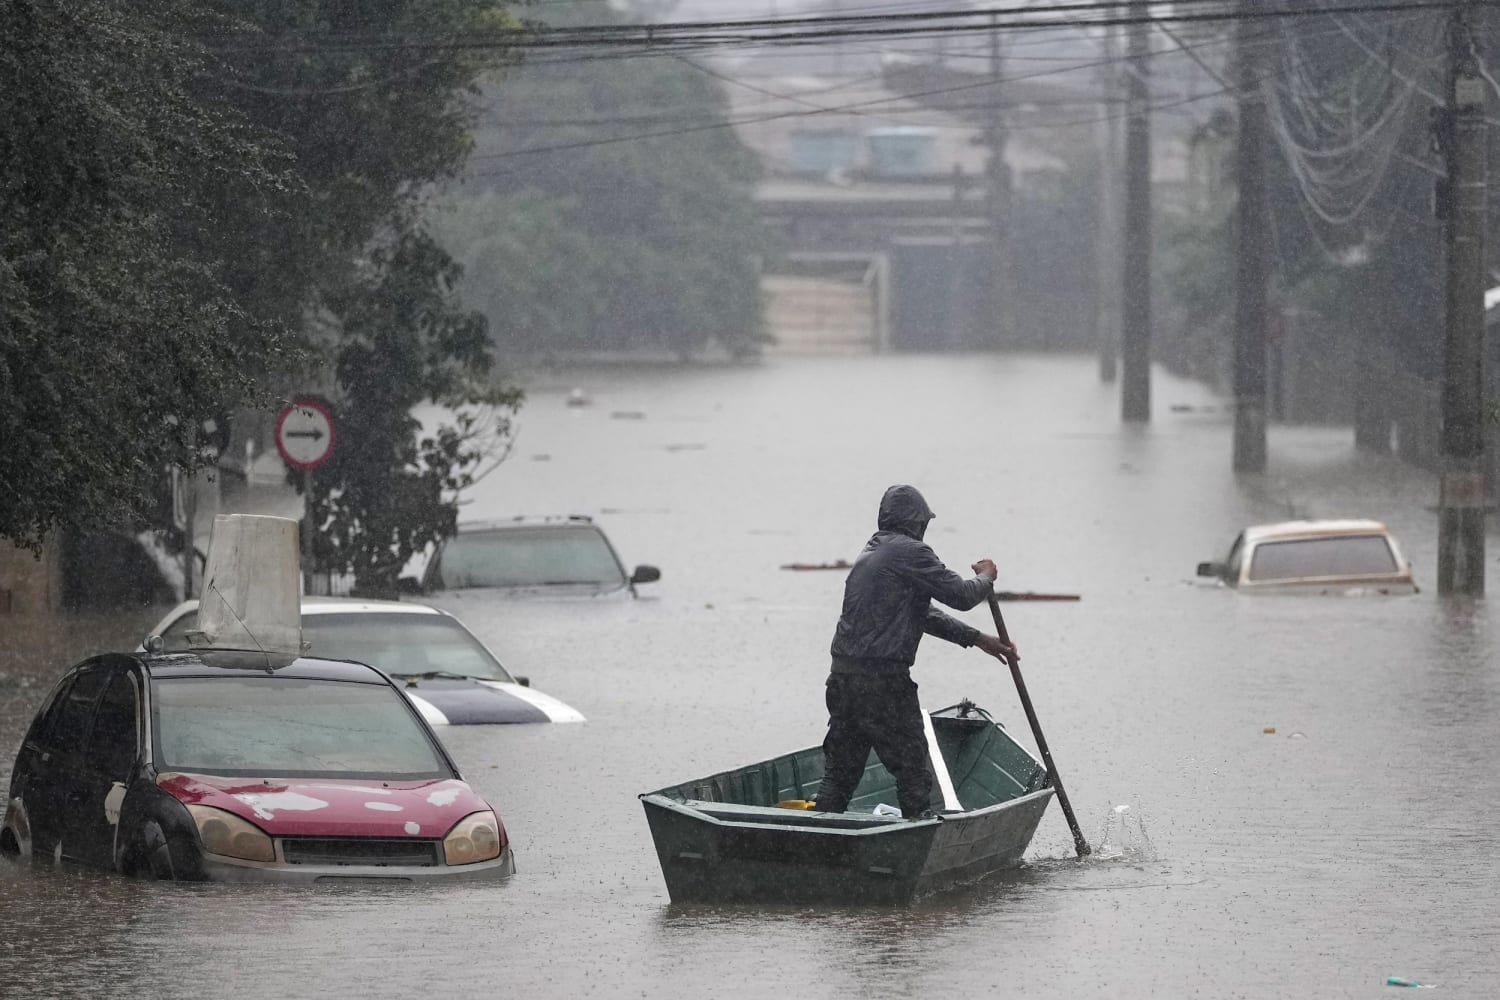 Aanhoudende overstromingen in Brazilië doen het schrikbeeld van klimaatmigratie toenemen